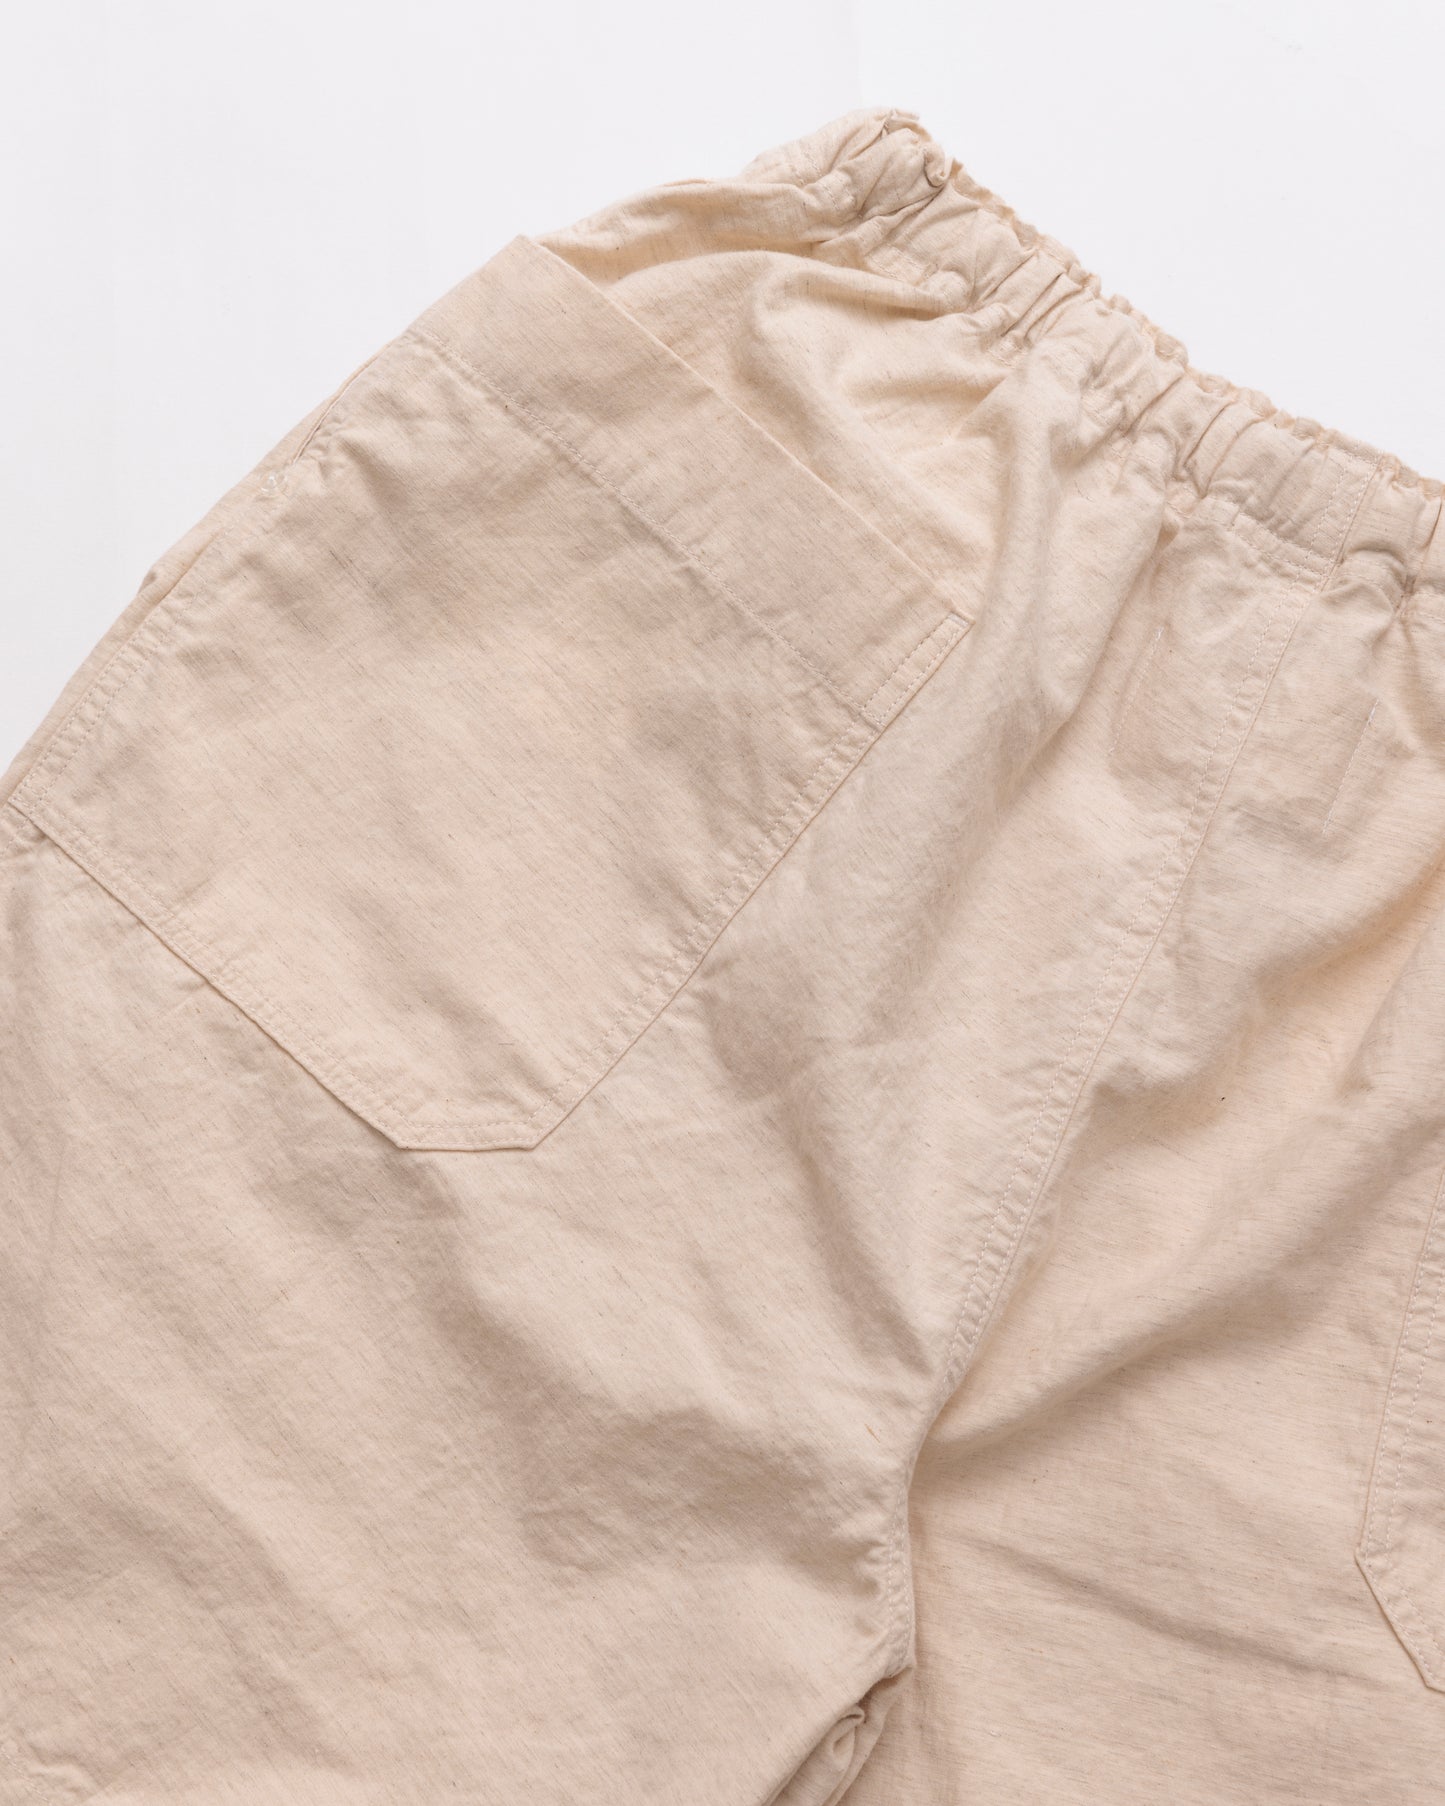 Pajama Shorts / Natural